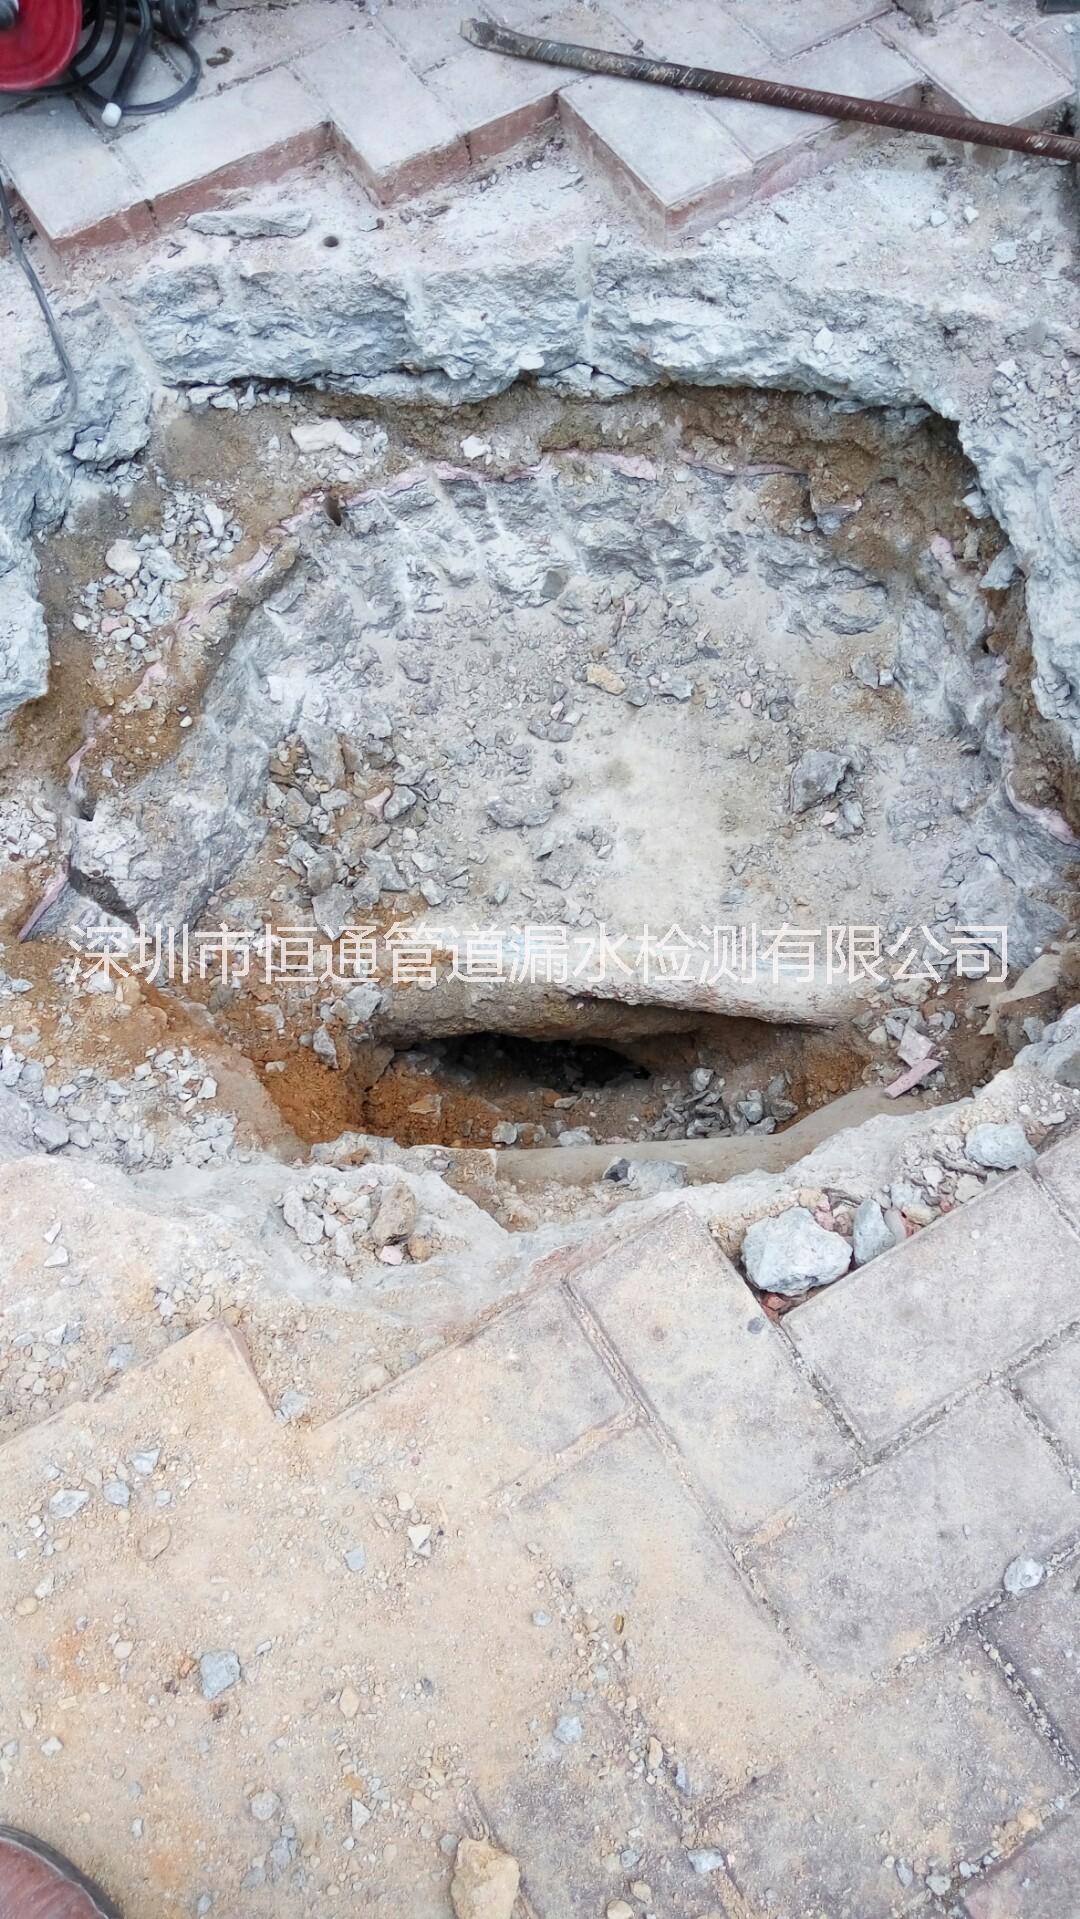 地下水管检测 地下水管维修地下水管检测 地下水管维修 漏水检测